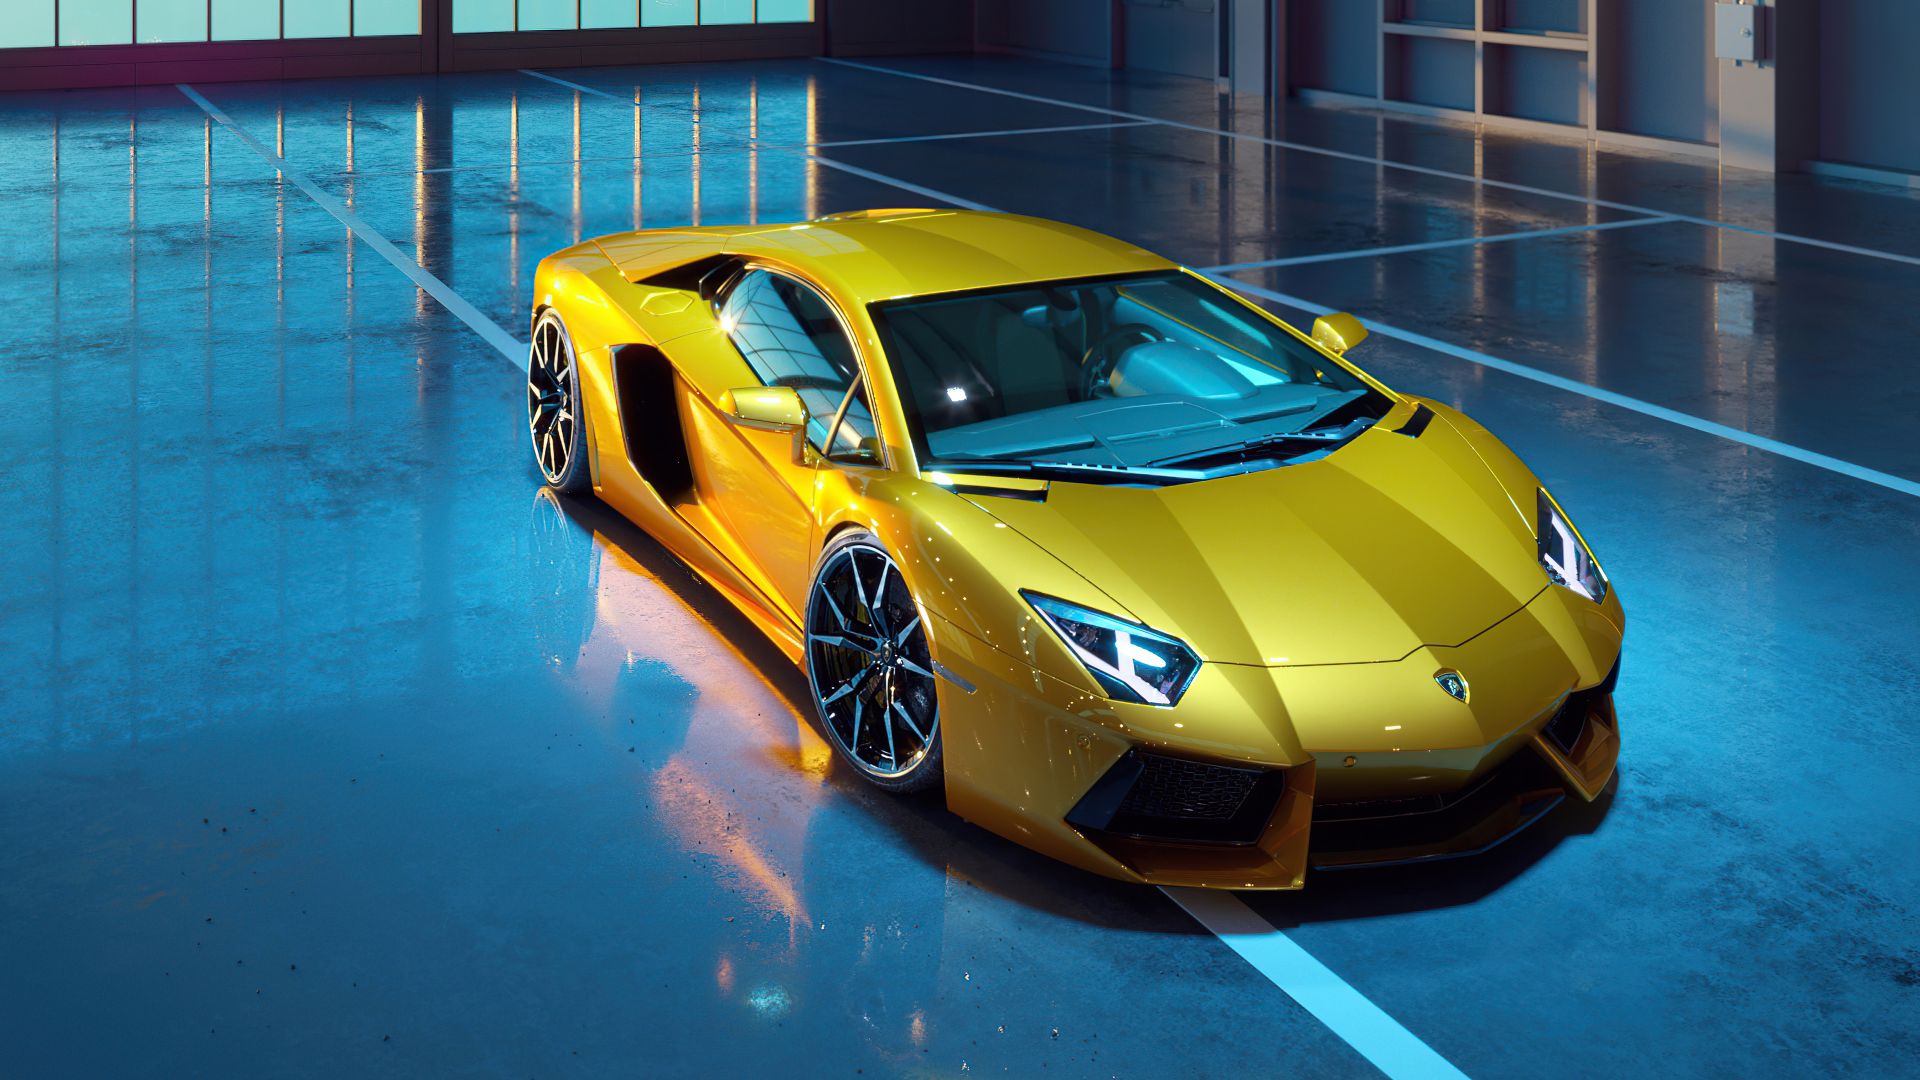 Bộ hình nền máy tính Lamborghini vàng Aventador Dione Forged sẽ khiến bạn trầm trồ. Với màu vàng sáng và thiết kế đầy tinh tế, chắc chắn nó sẽ là nét đặc sắc cho máy tính của bạn.